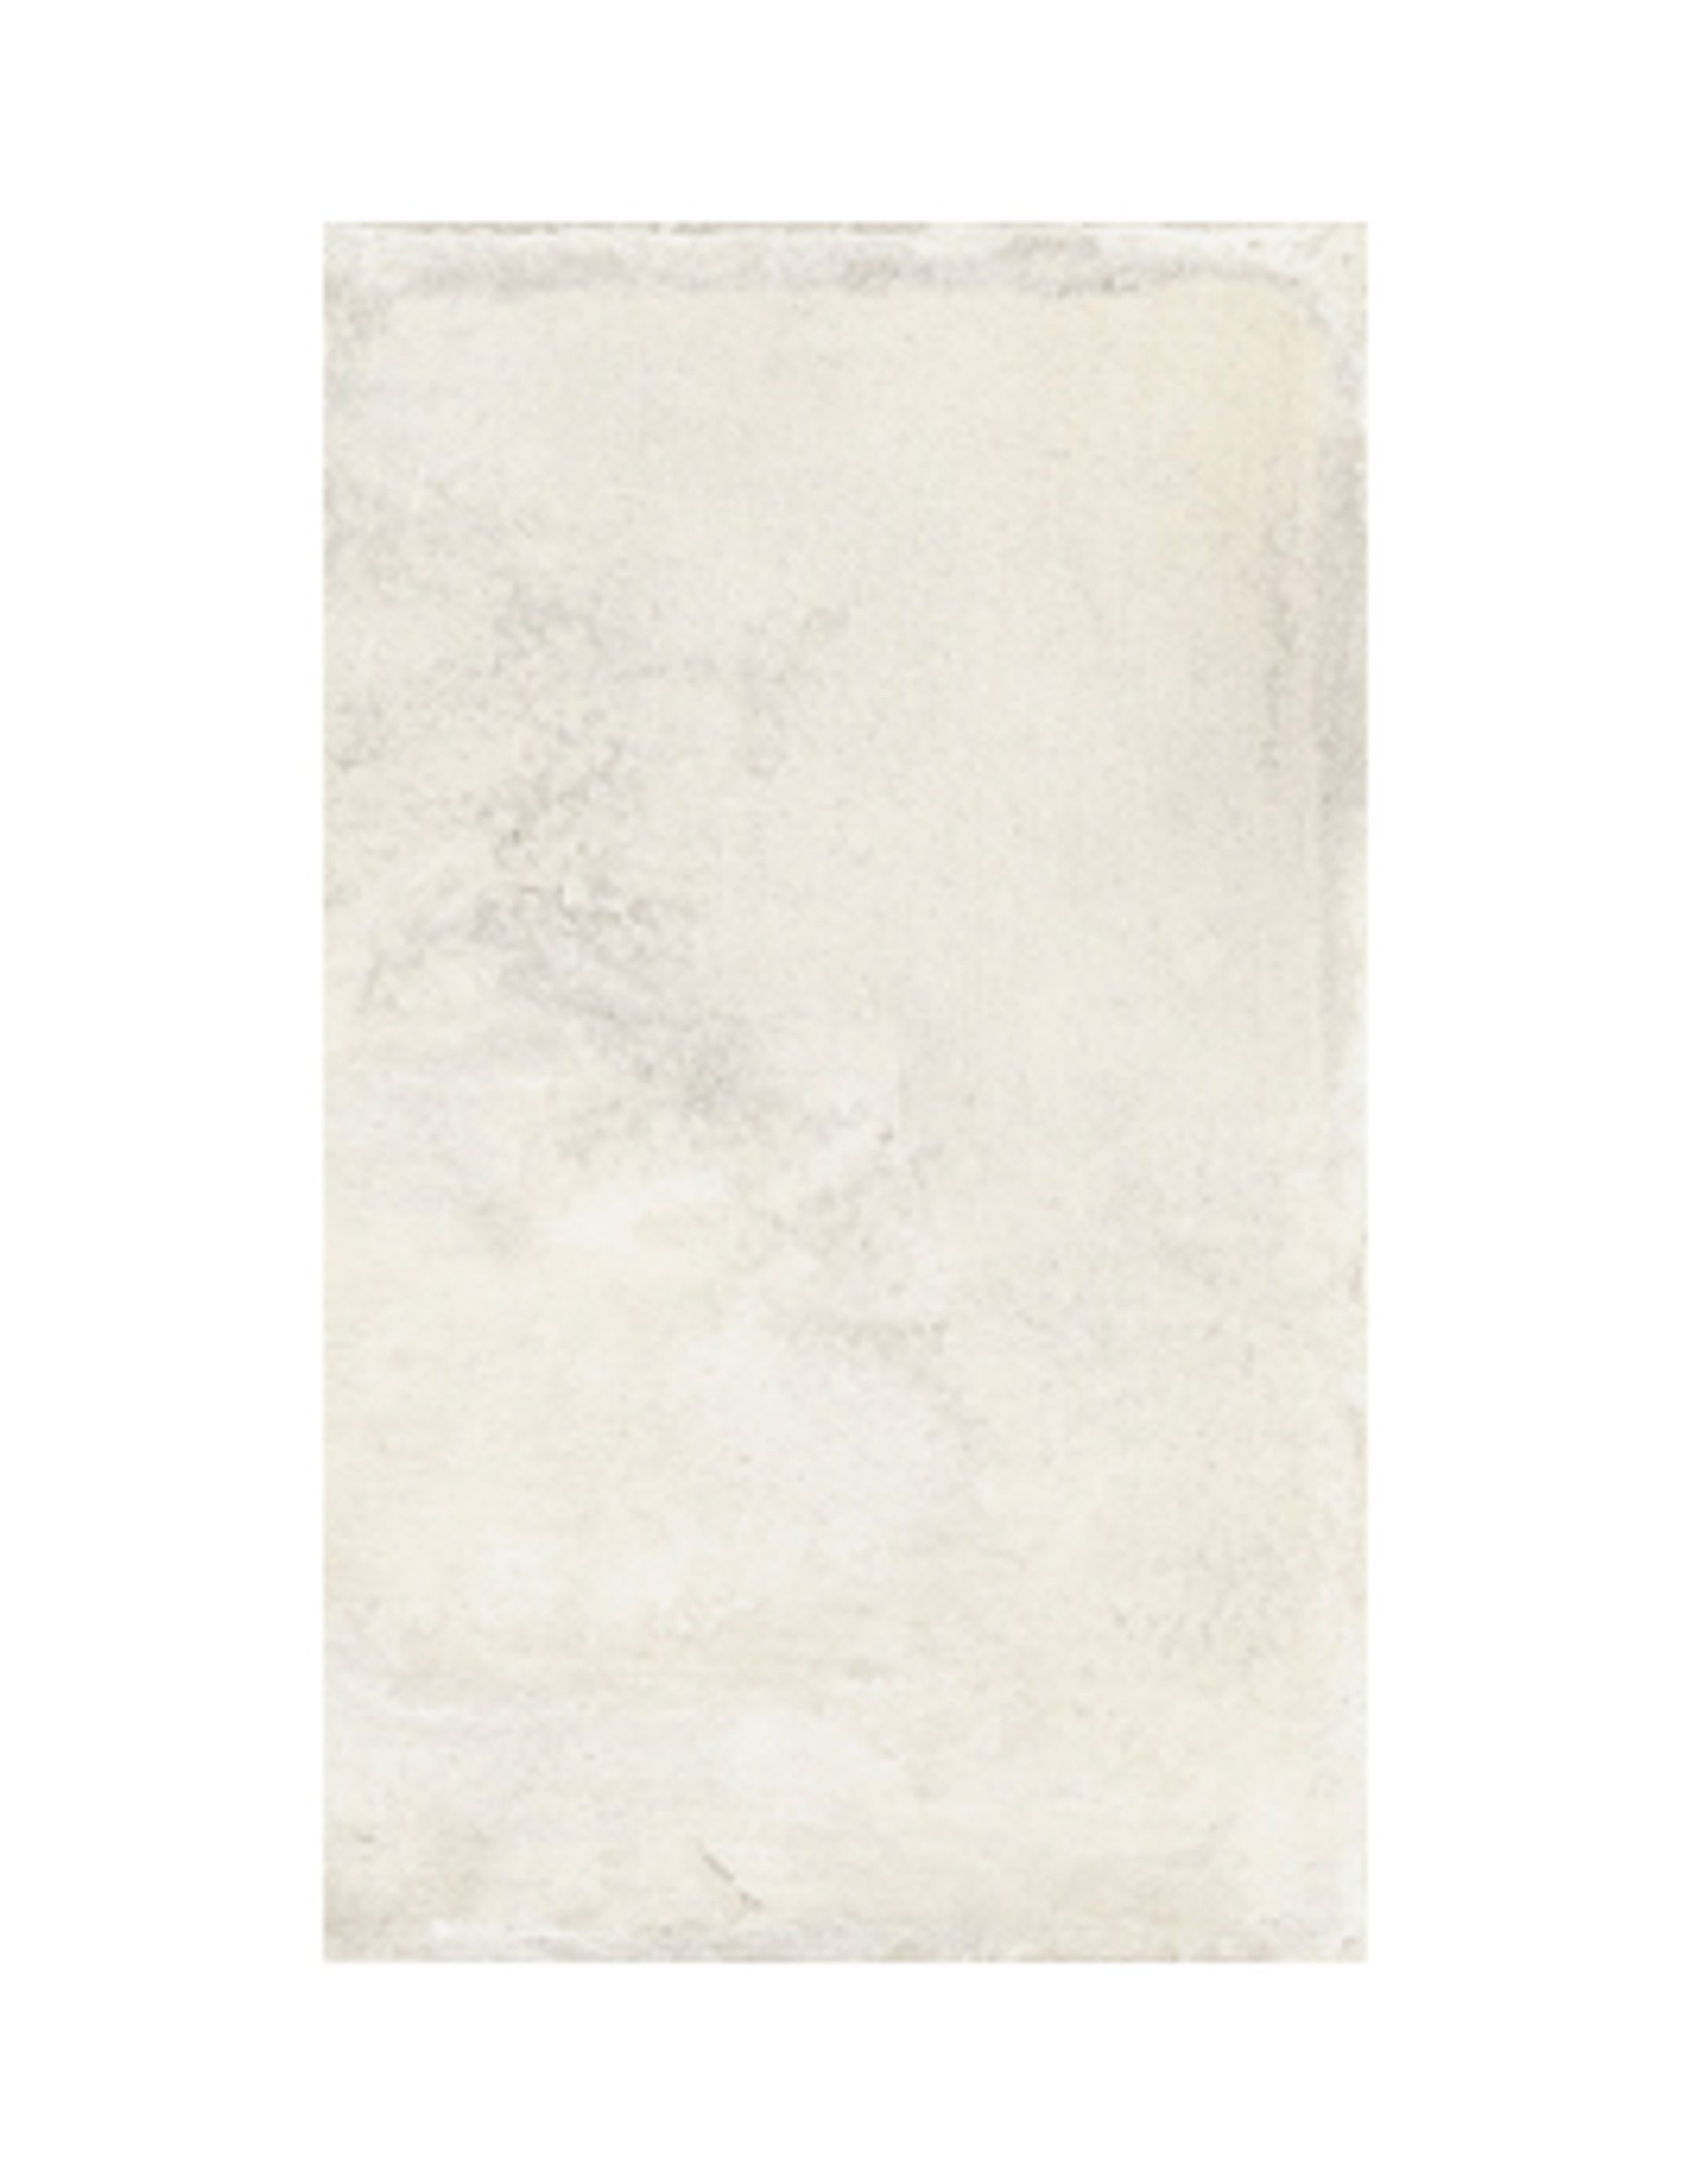 Carrelage NATURE LISSE, aspect pierre blanc, dim 30.00 x 50.00 cm